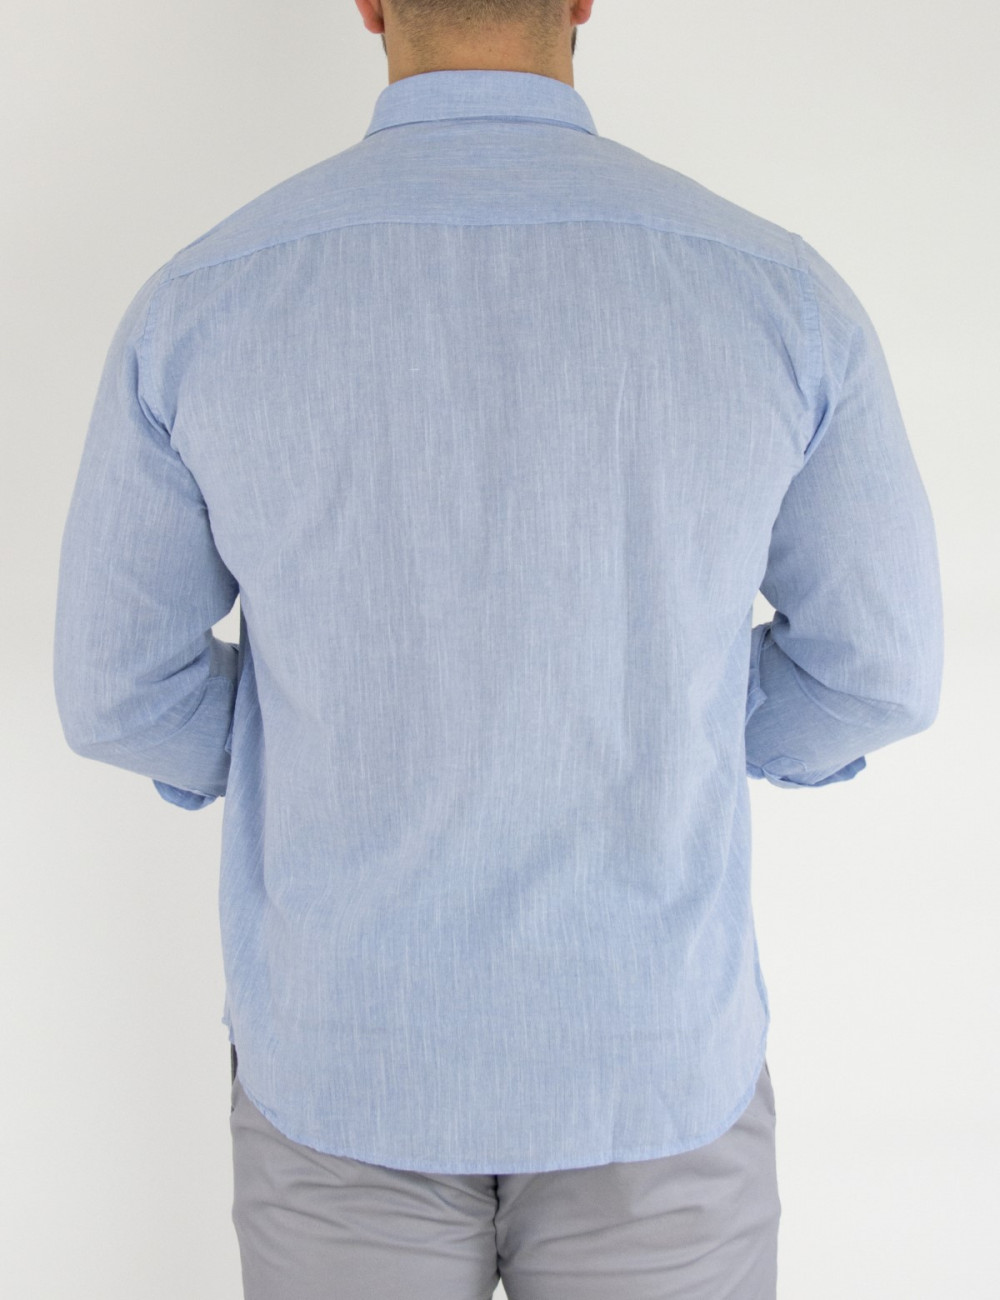 Ανδρικό βαμβακερό σιέλ μονόχρωμο πουκάμισο SL65C